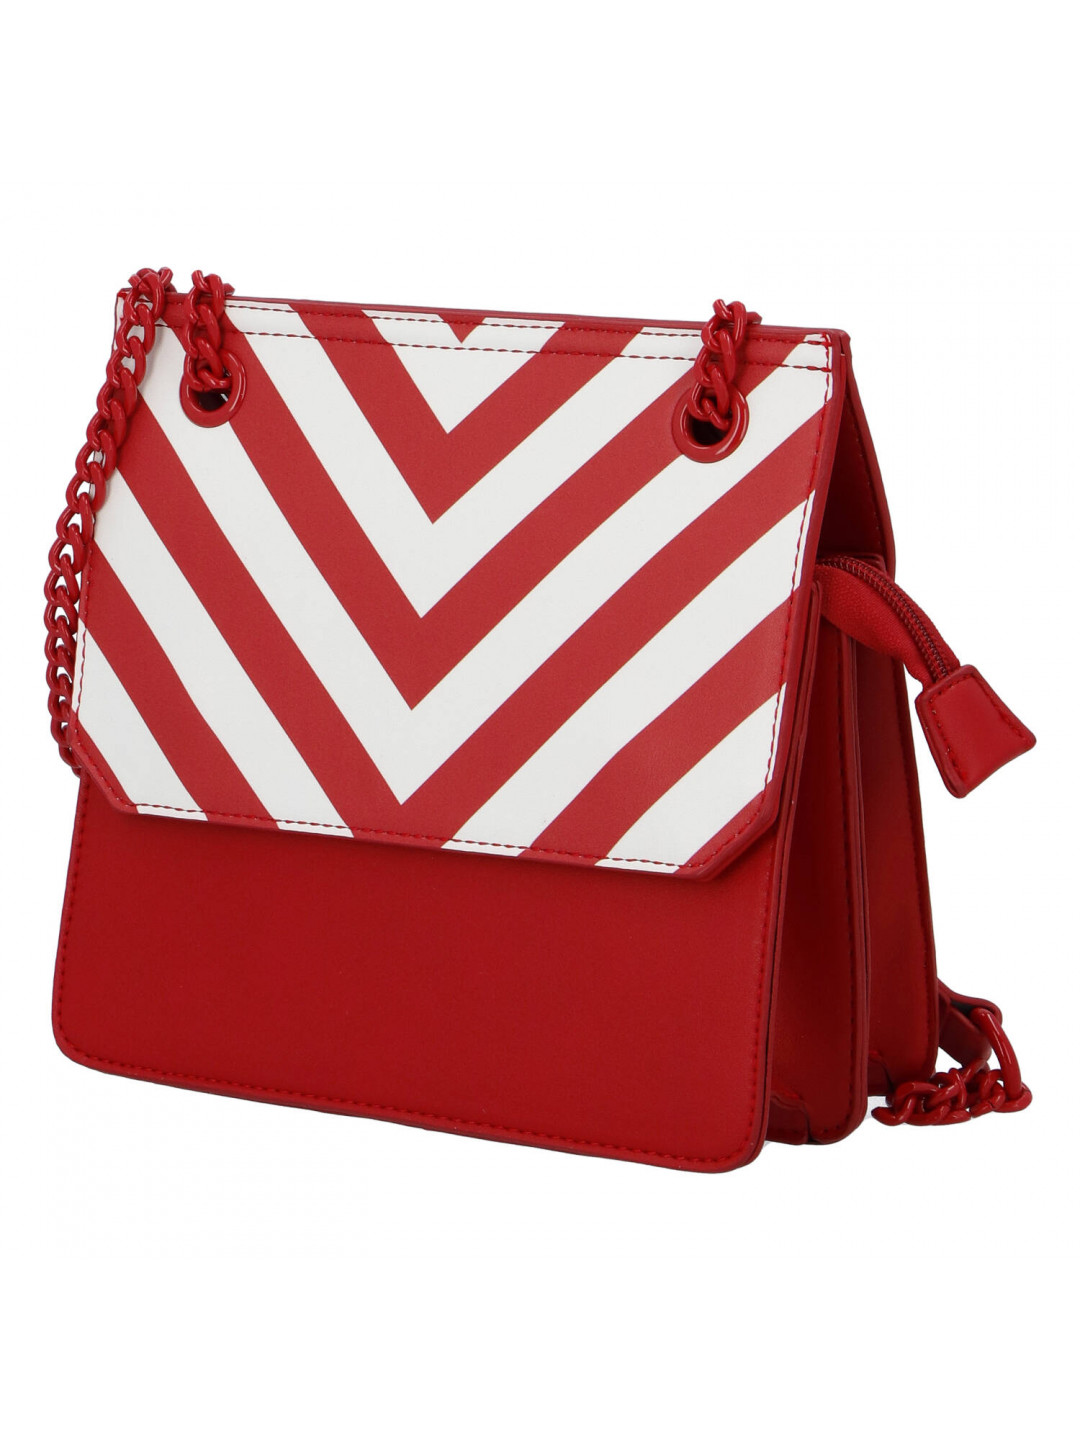 Moderní dámská koženková kabelka Happy Stripes červená